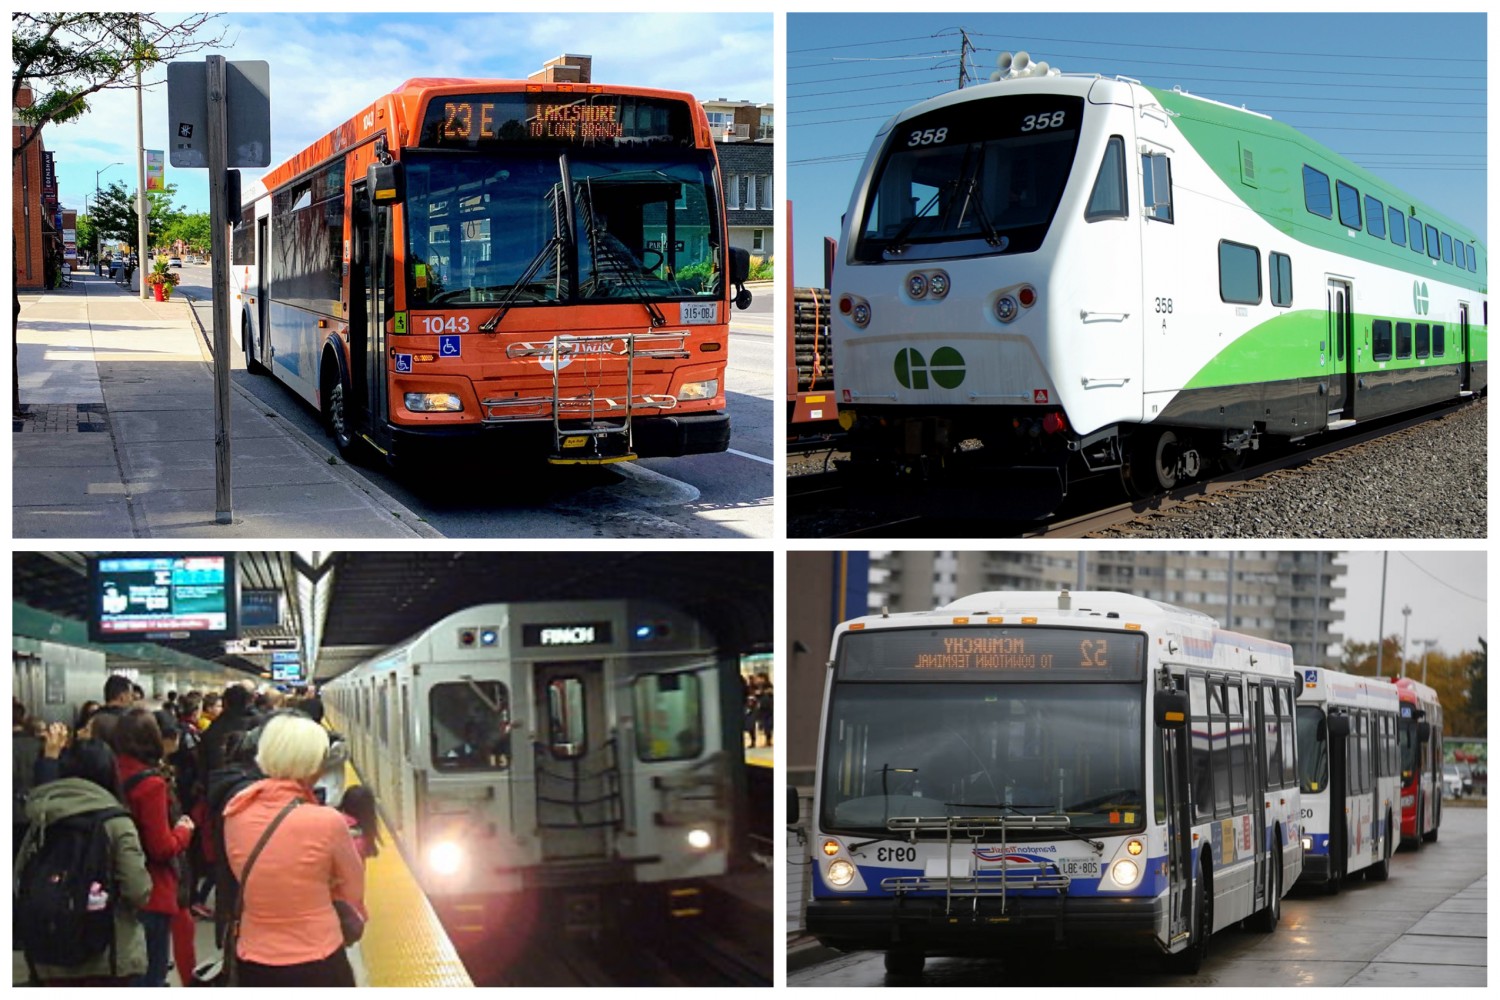 Part 2: Regional transportation—GTA students need integrated transit system